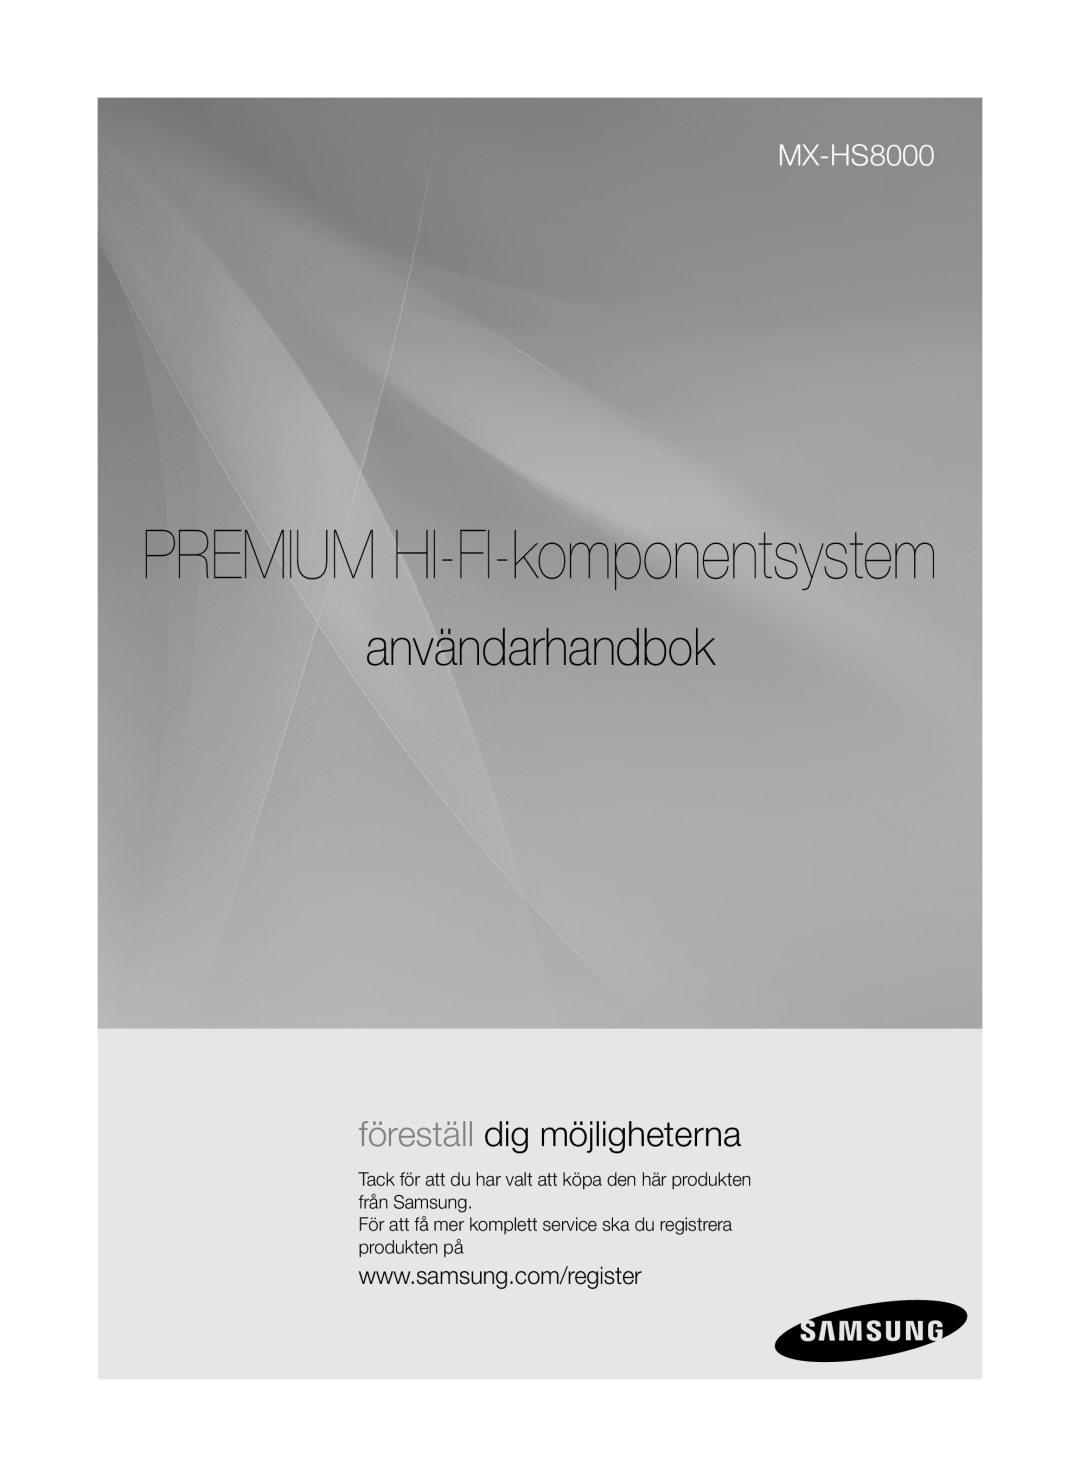 Samsung MX-HS8000/ZF, MX-HS8000/EN manual PREMIUM HI-FI-komponentsystem, användarhandbok, föreställ dig möjligheterna 